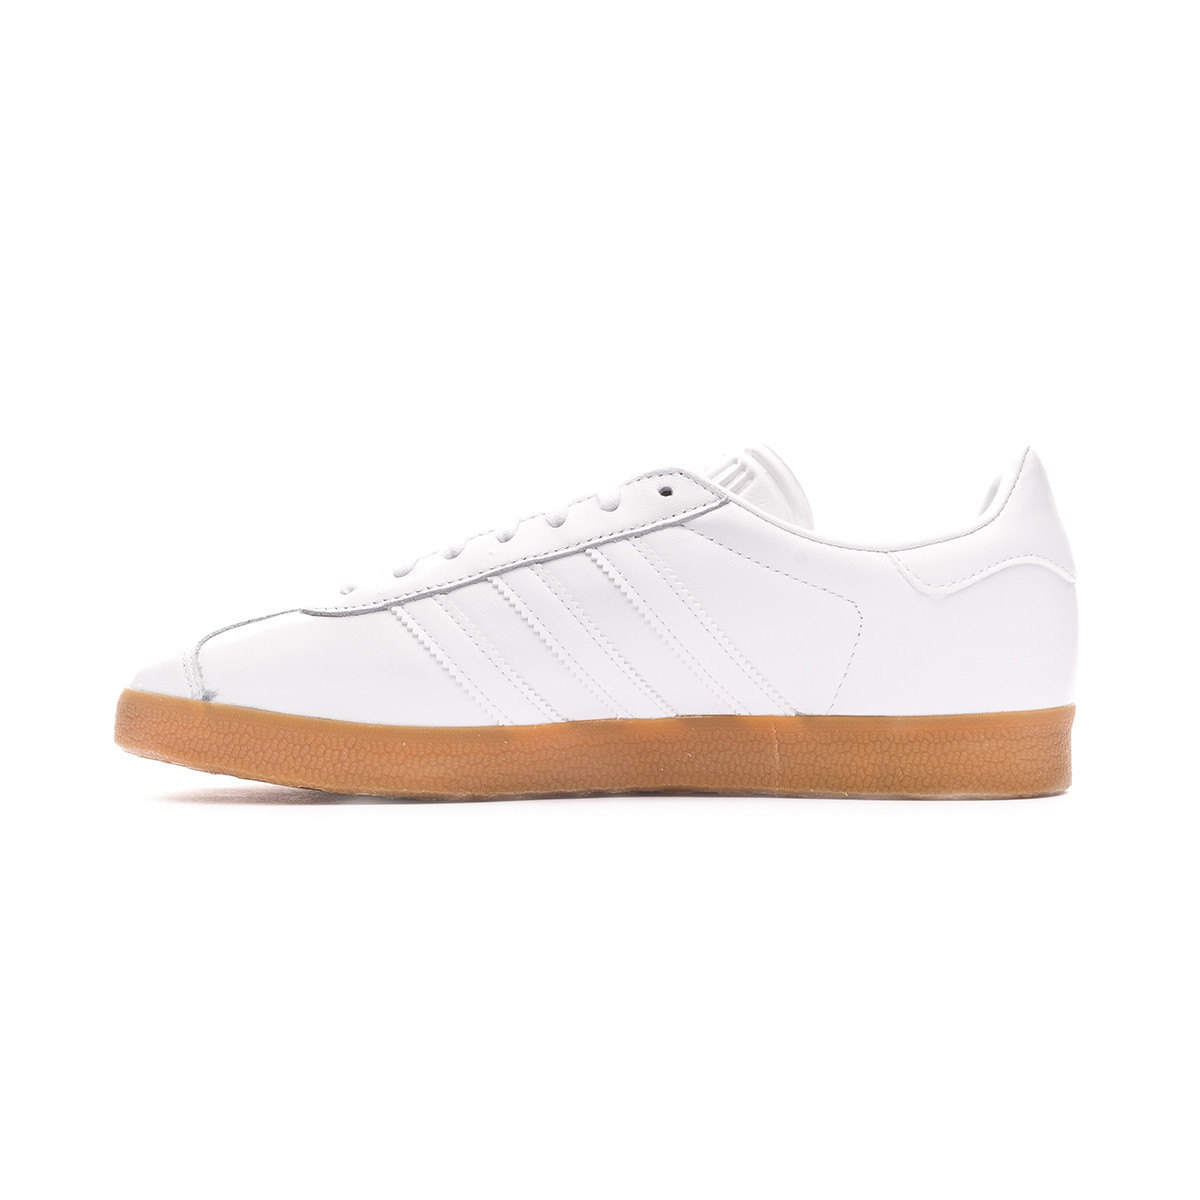 adidas gazelle white gum